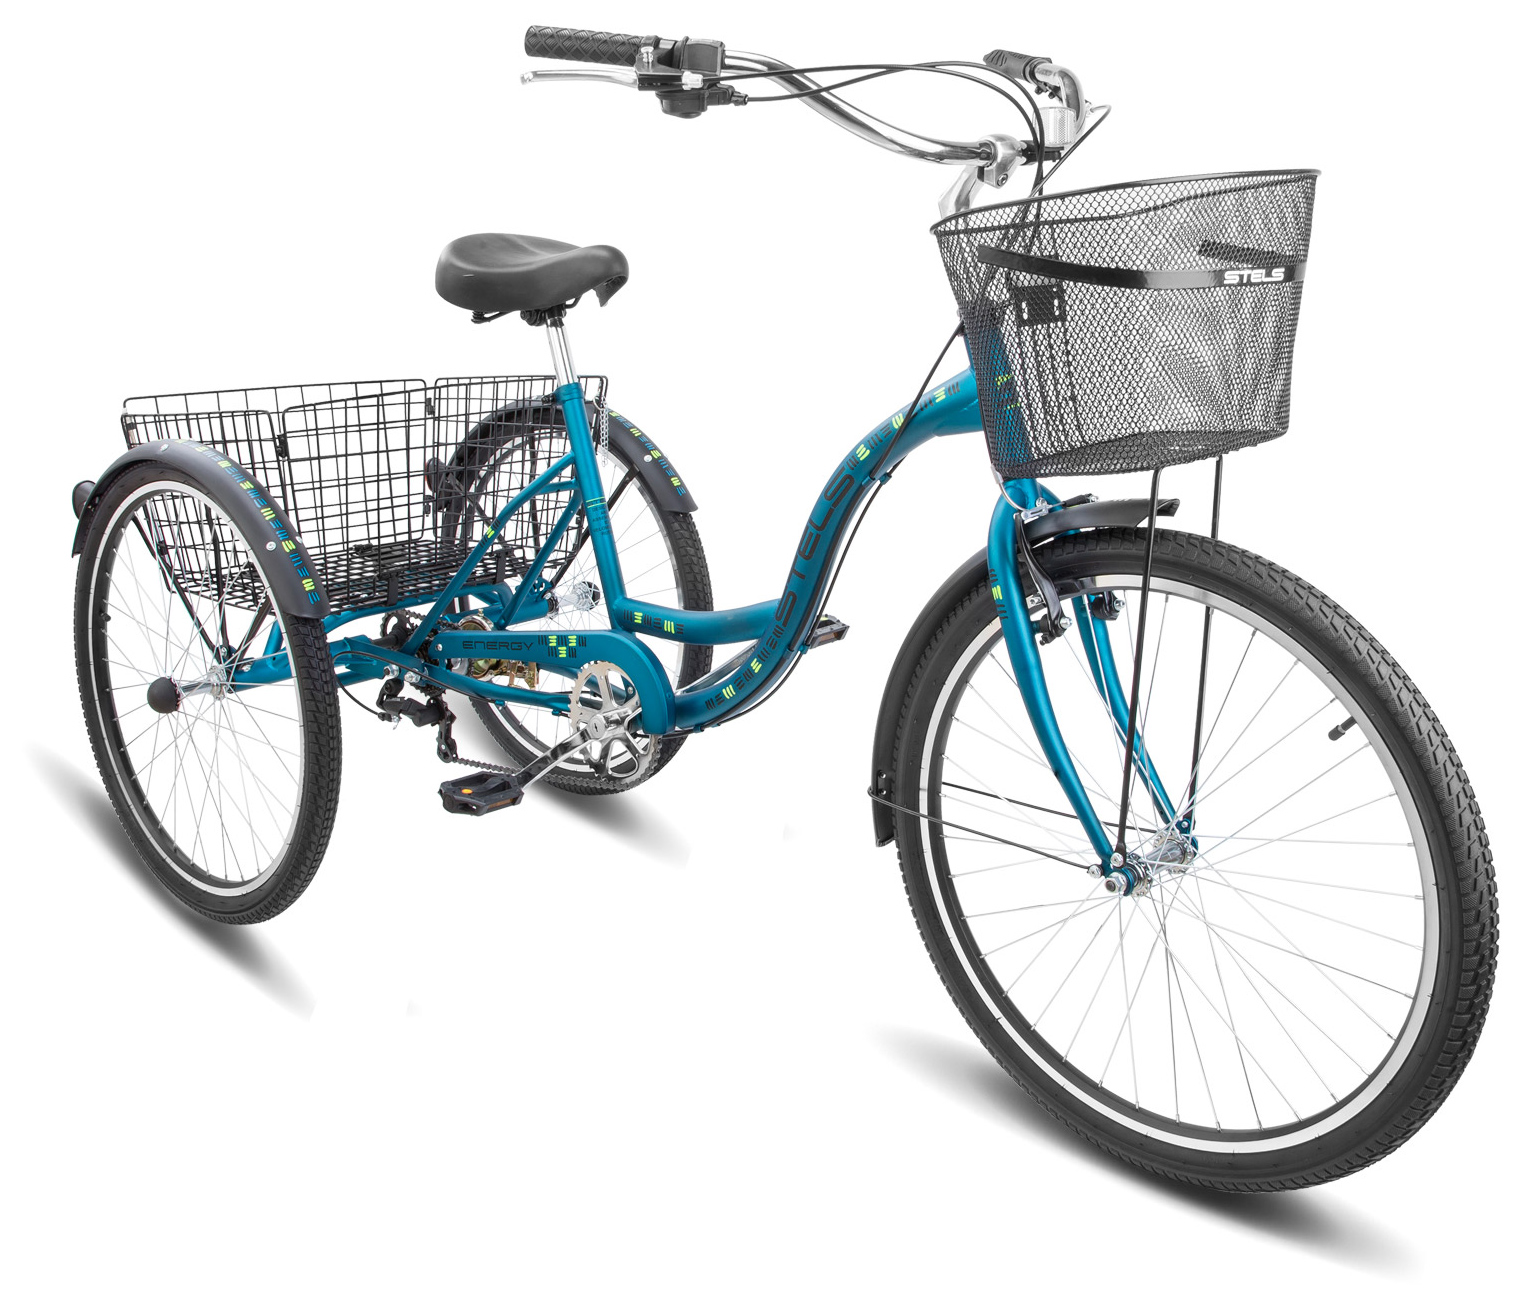  Отзывы о Городском велосипеде Stels Energy VI 26 (V010) 2019